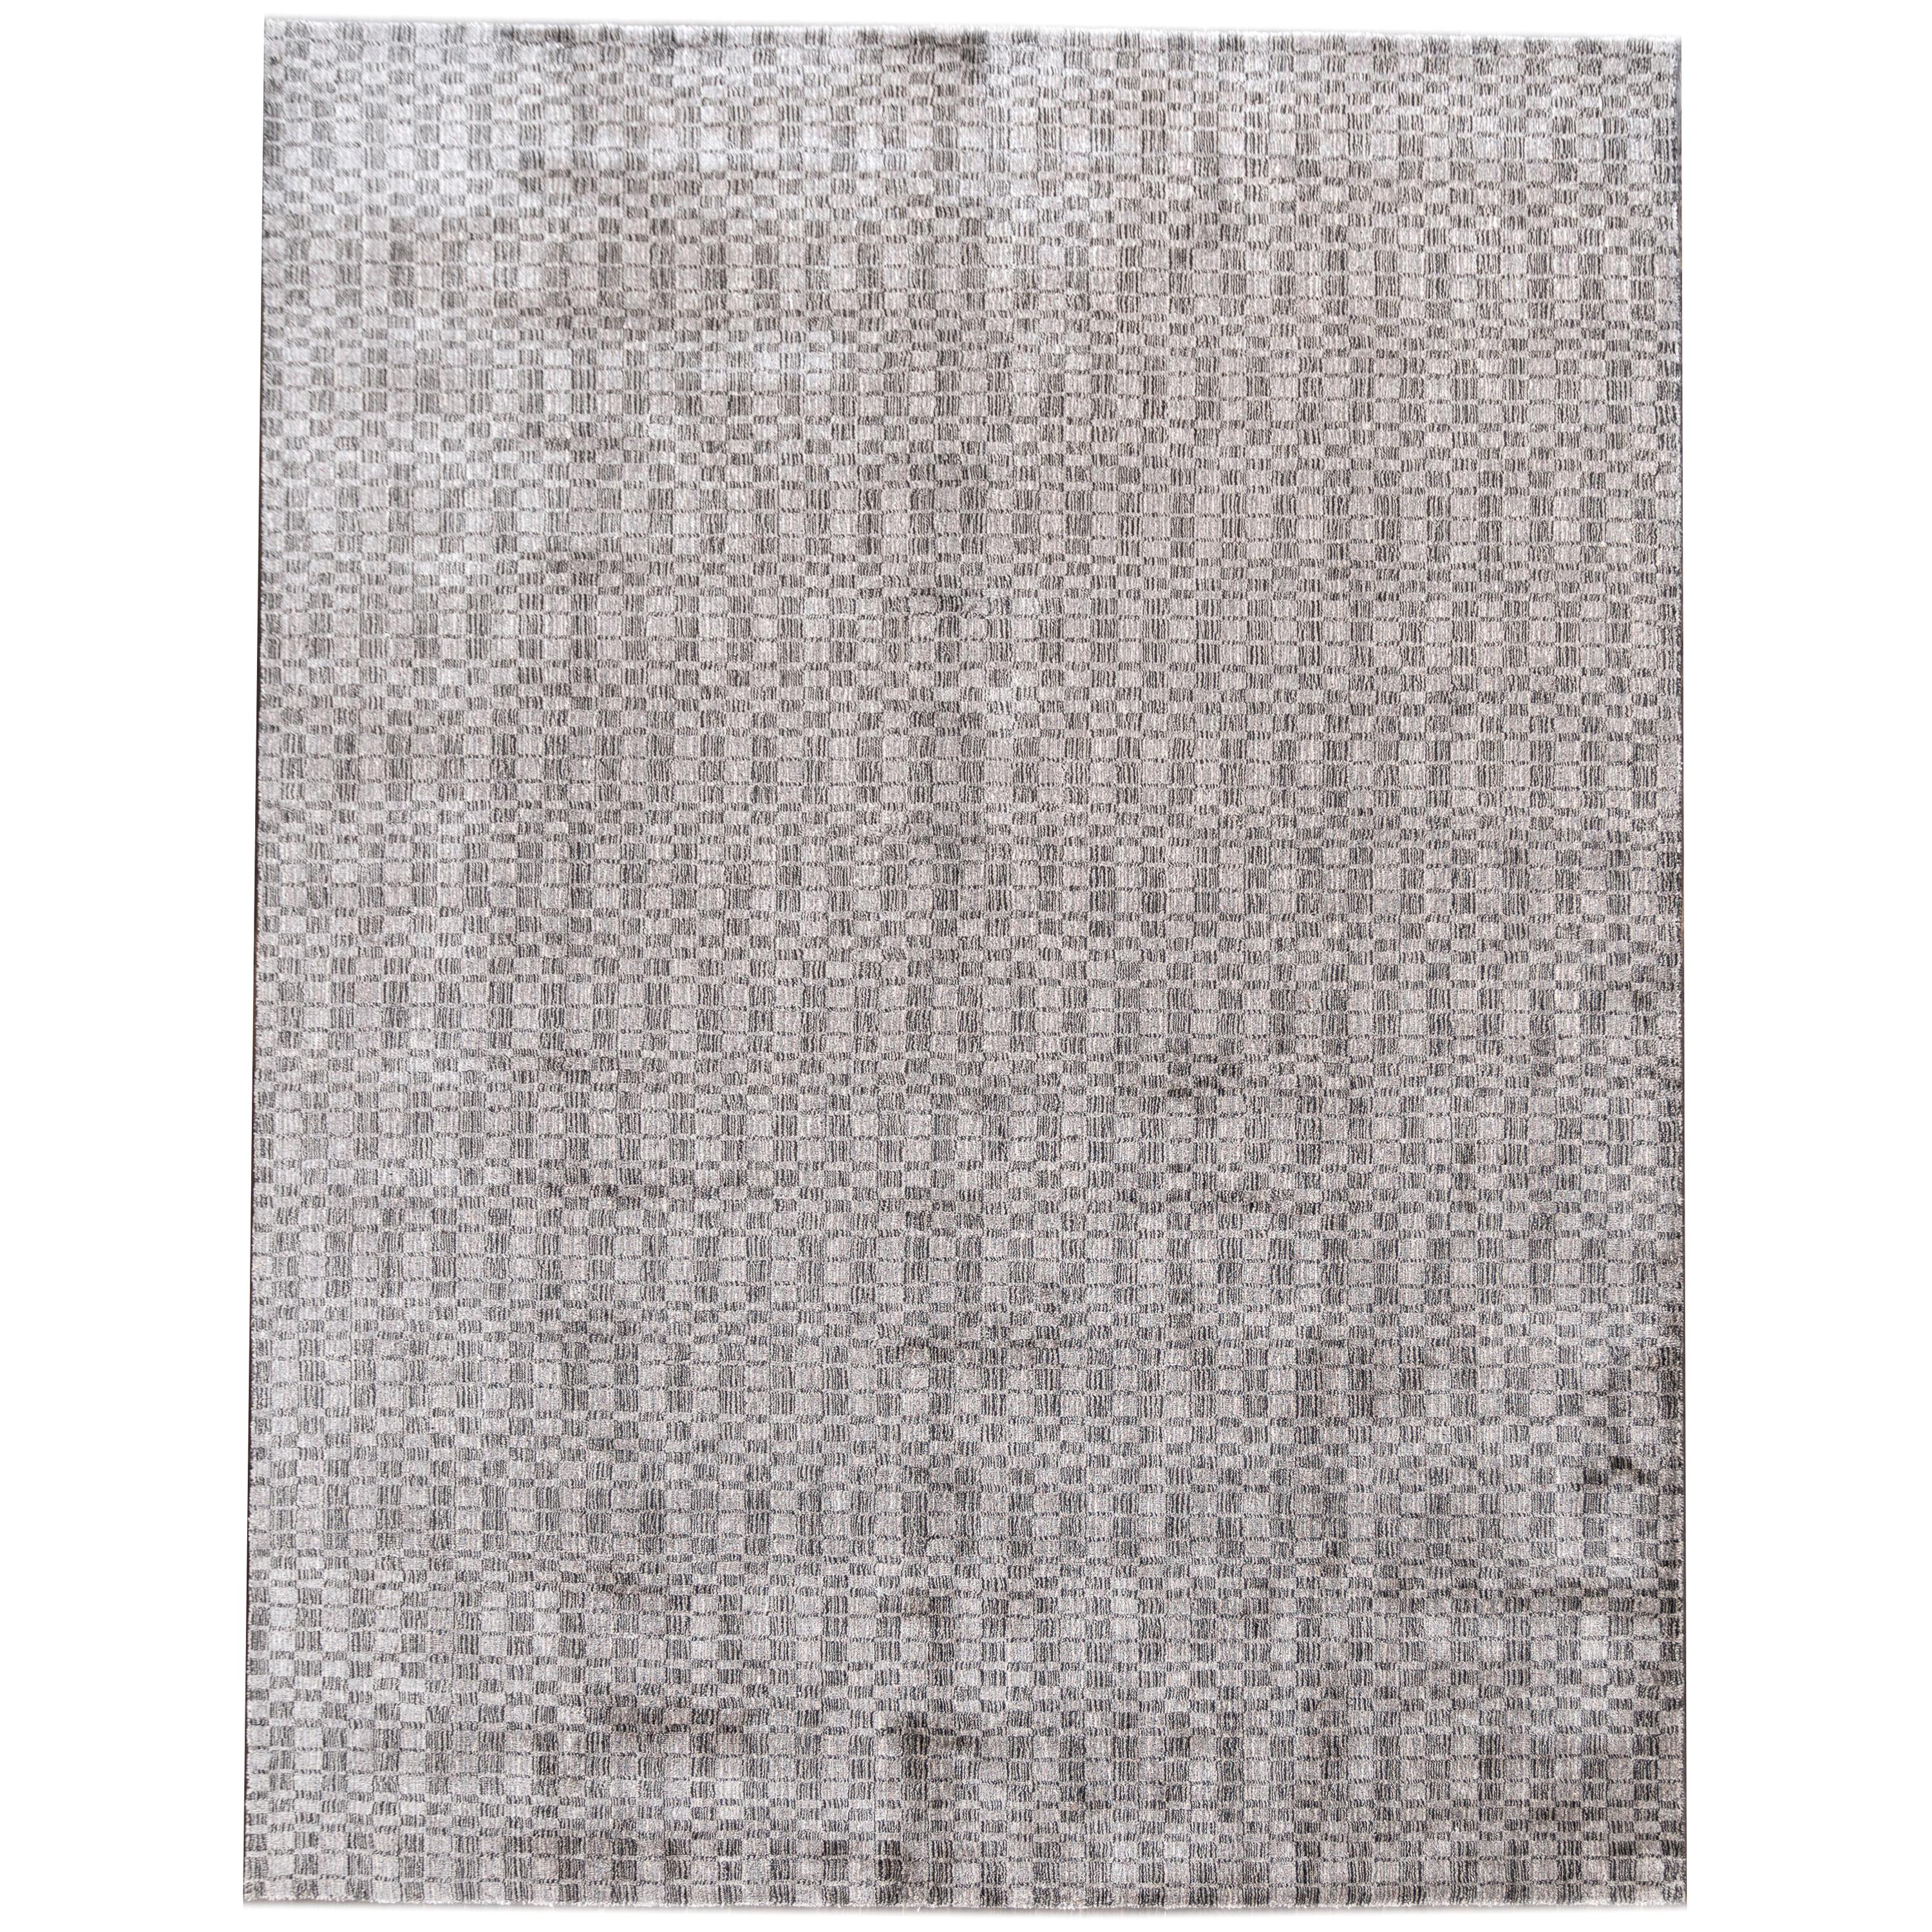 Zeitgenössischer silberner Teppich aus Seide in Zimmergröße